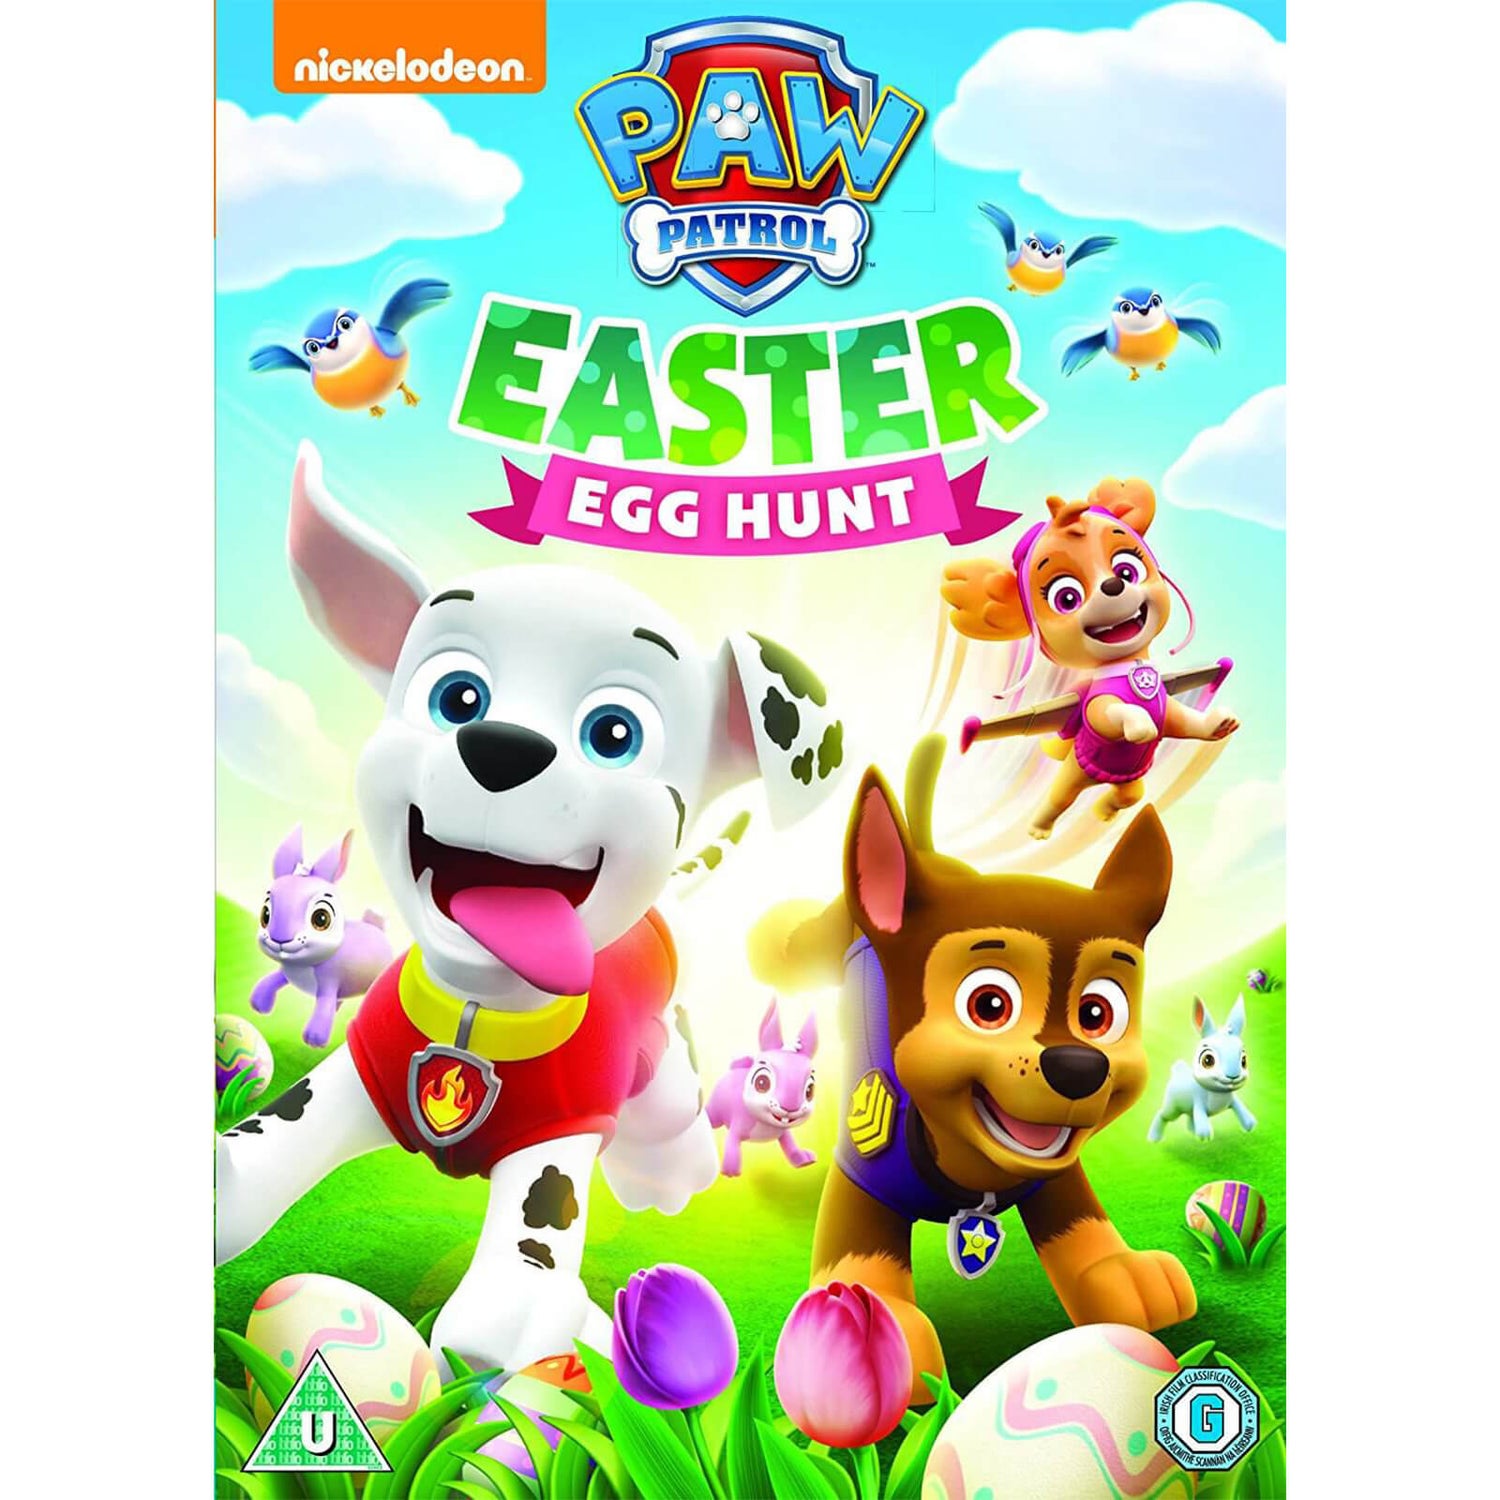 Paw Patrol: Easter Egg Hunt